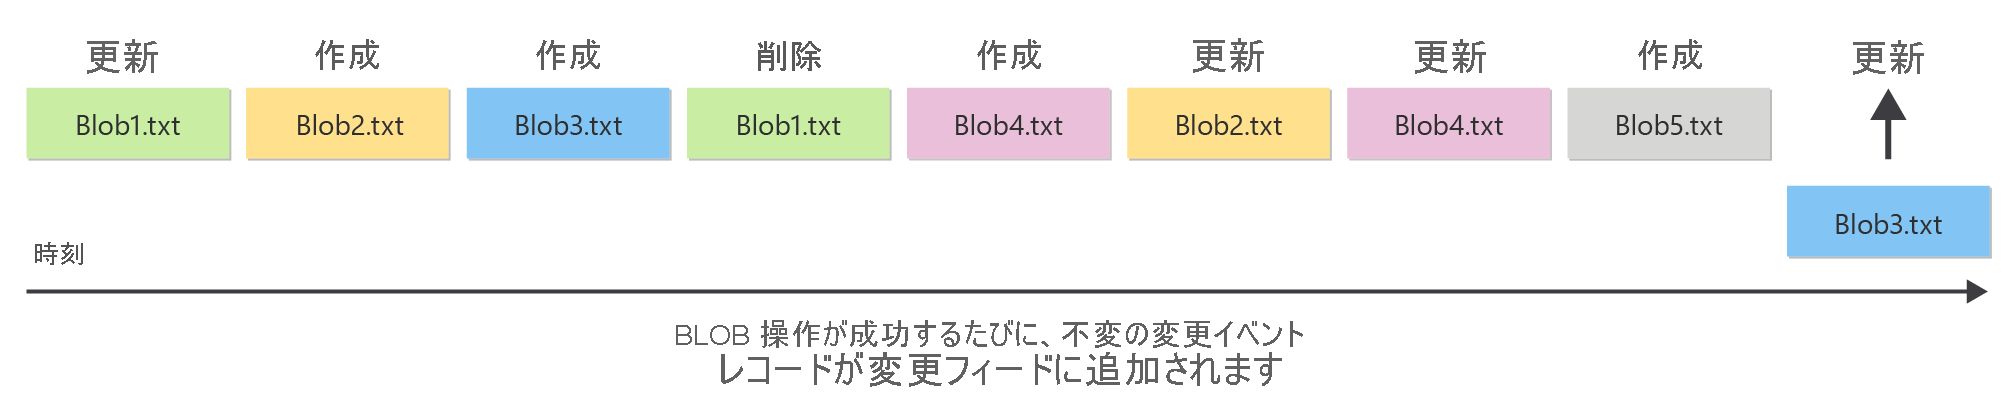 変更フィードによって BLOB への変更の順序付きログが提供されるしくみを示す図